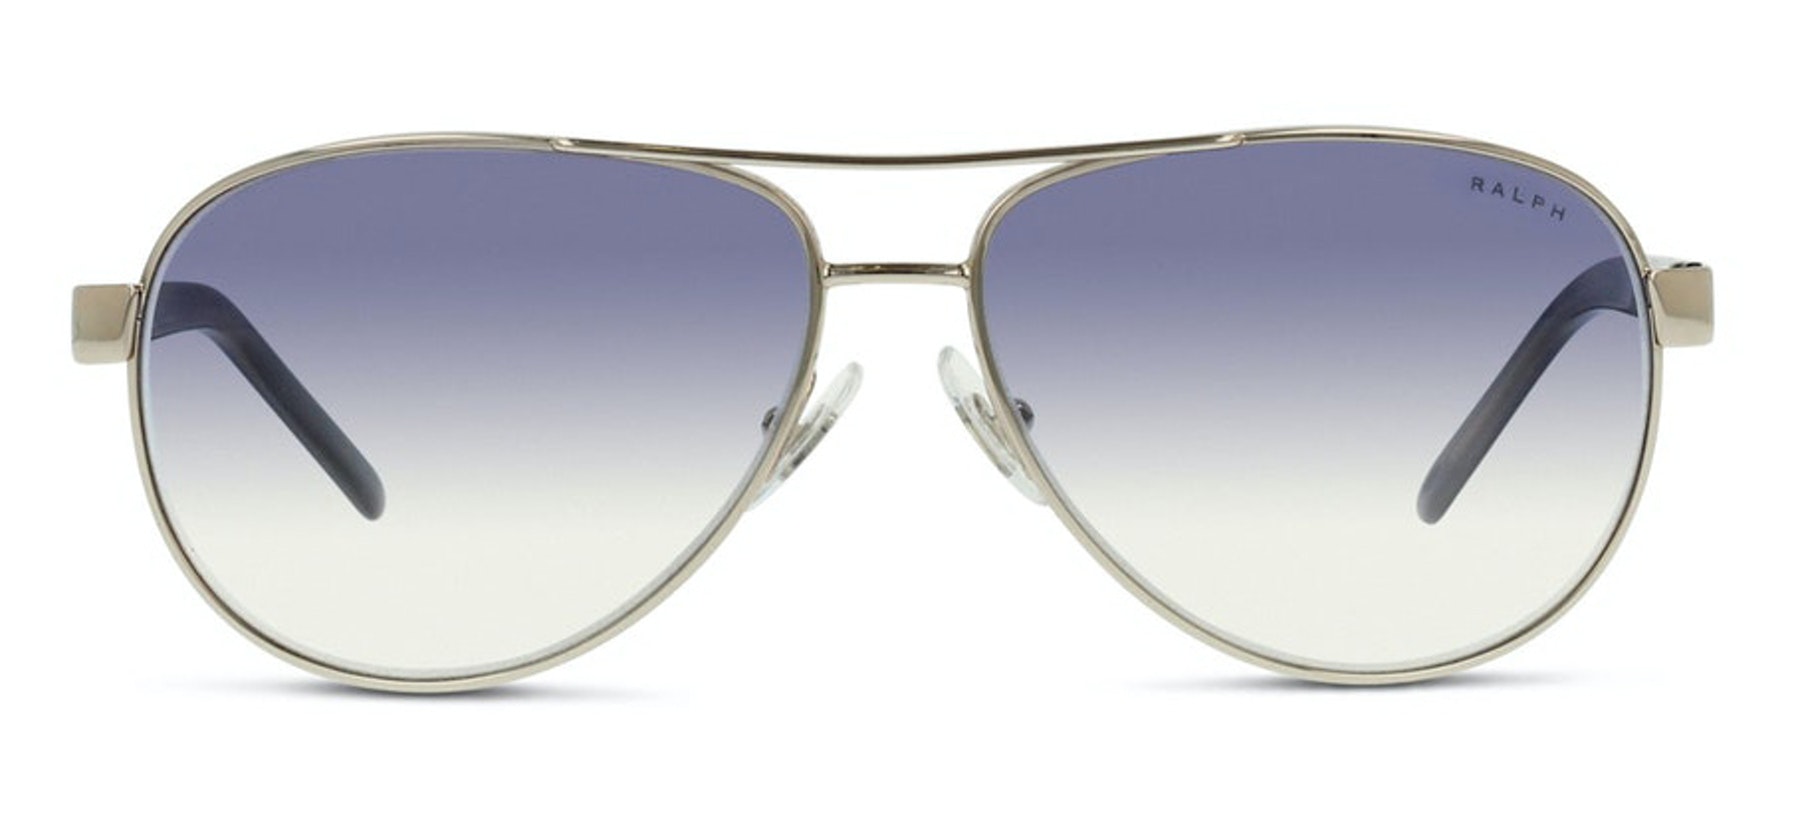 ralph lauren aviator sunglasses womens